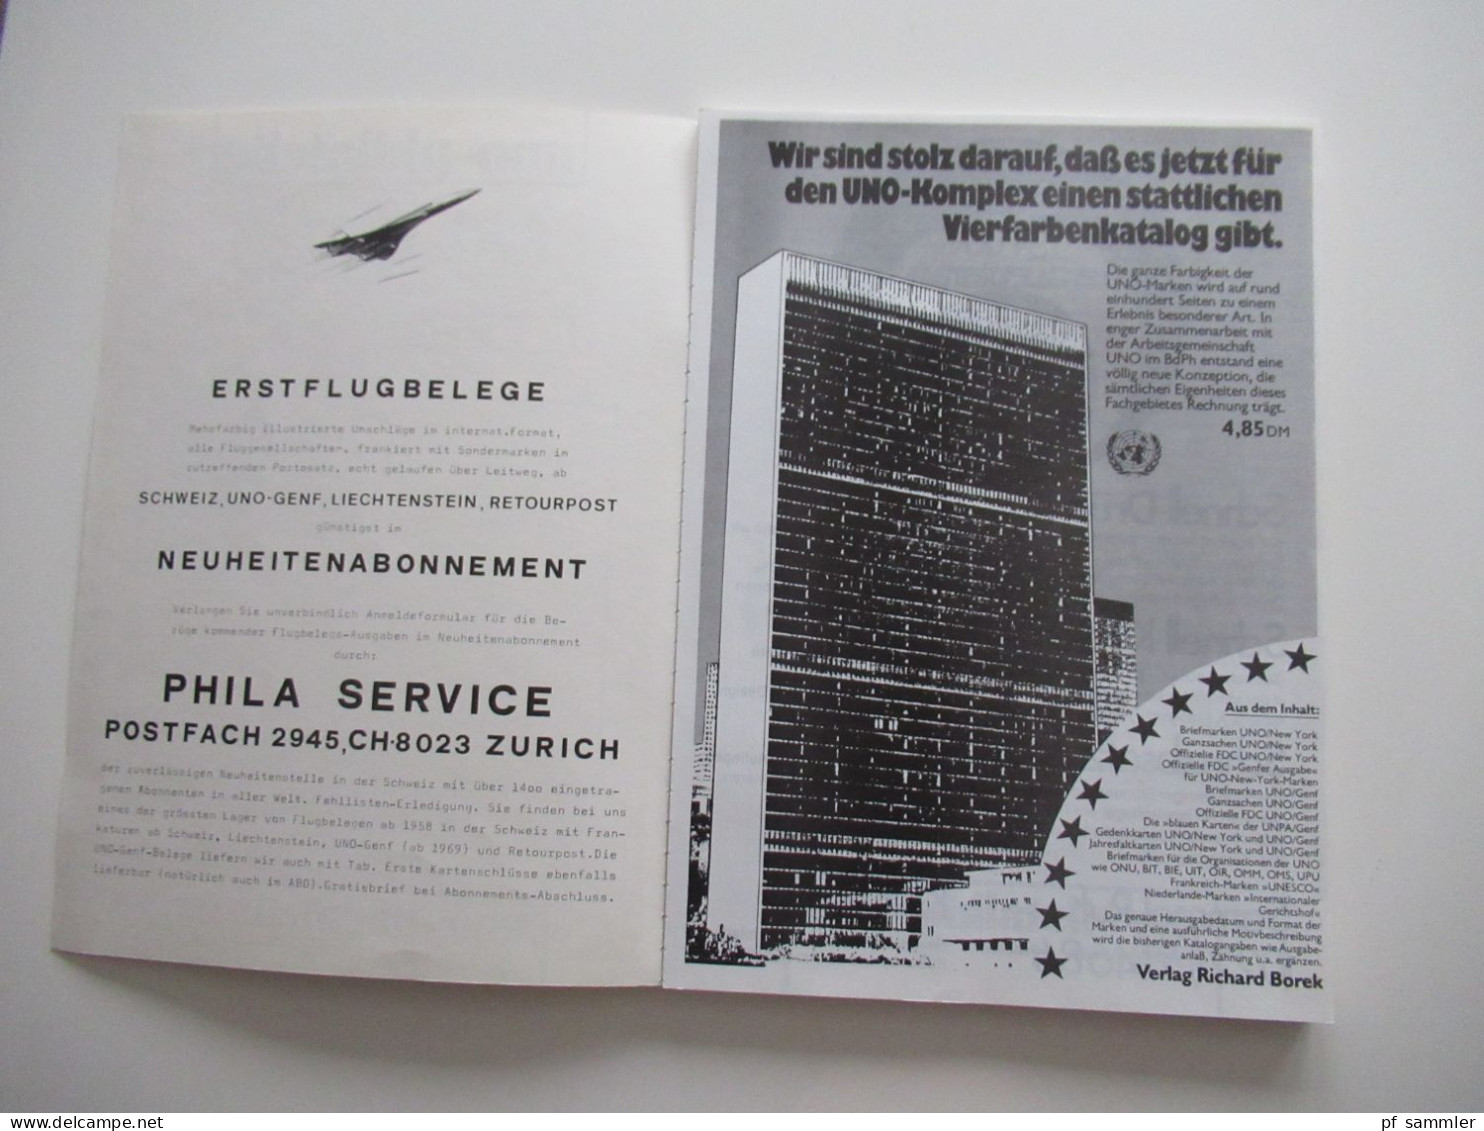 UNO - Philatelie, Handbuch Hb 76, Erstflugbriefe Der Vereinten Nationen, United Nations First Flight Covers 1959 - 1976 - Kataloge